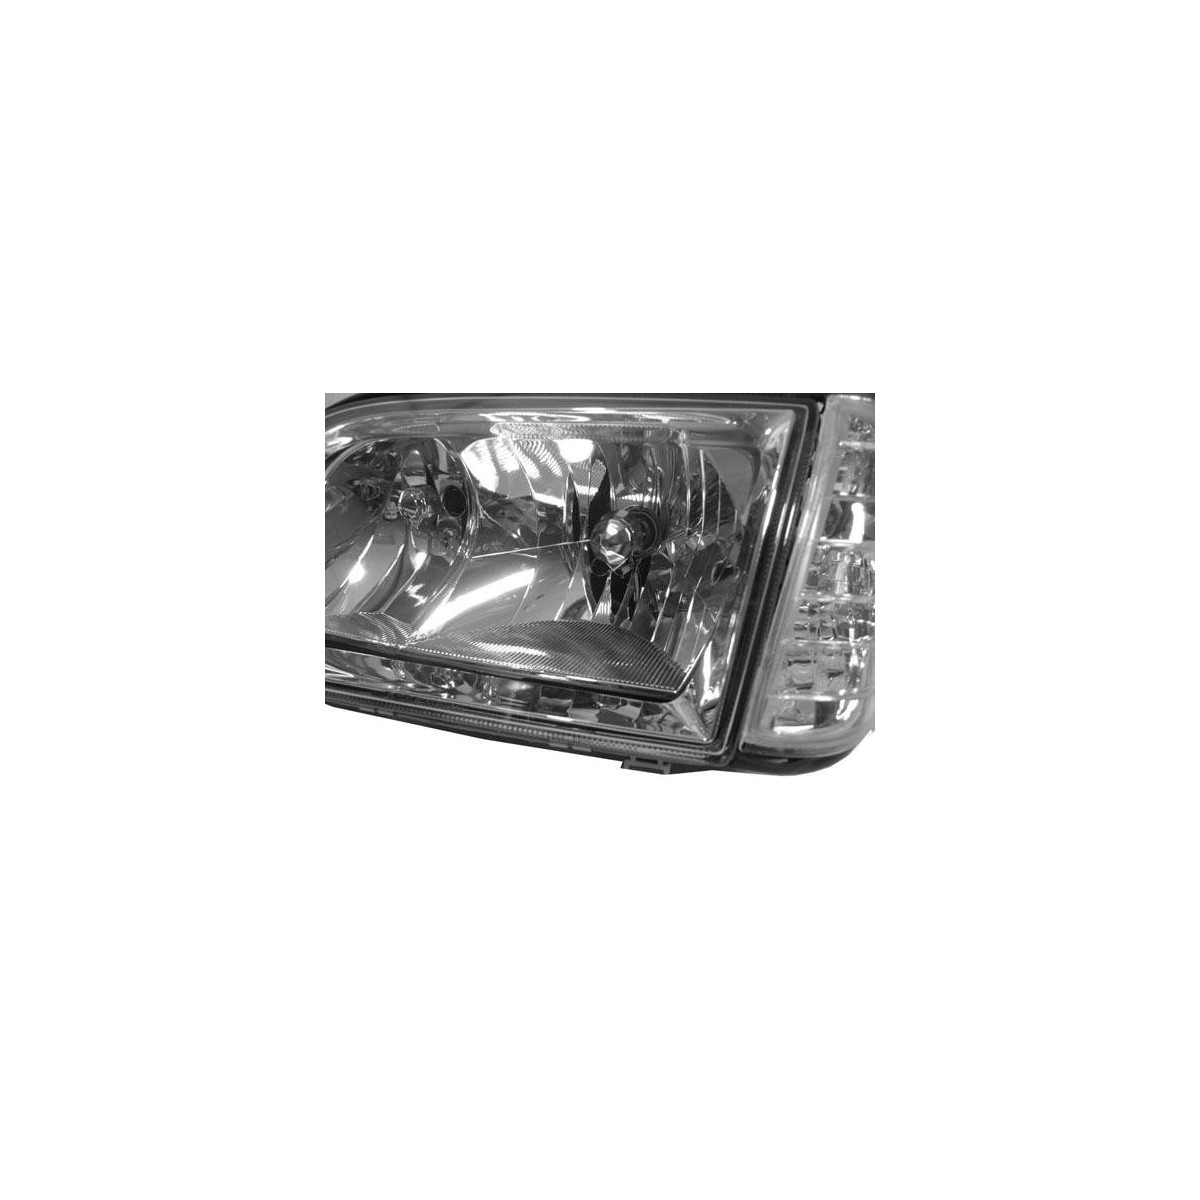 LAMPY PRZEDNIE MERCEDES W140 S-KLASA 03.91-10.98 CHROME